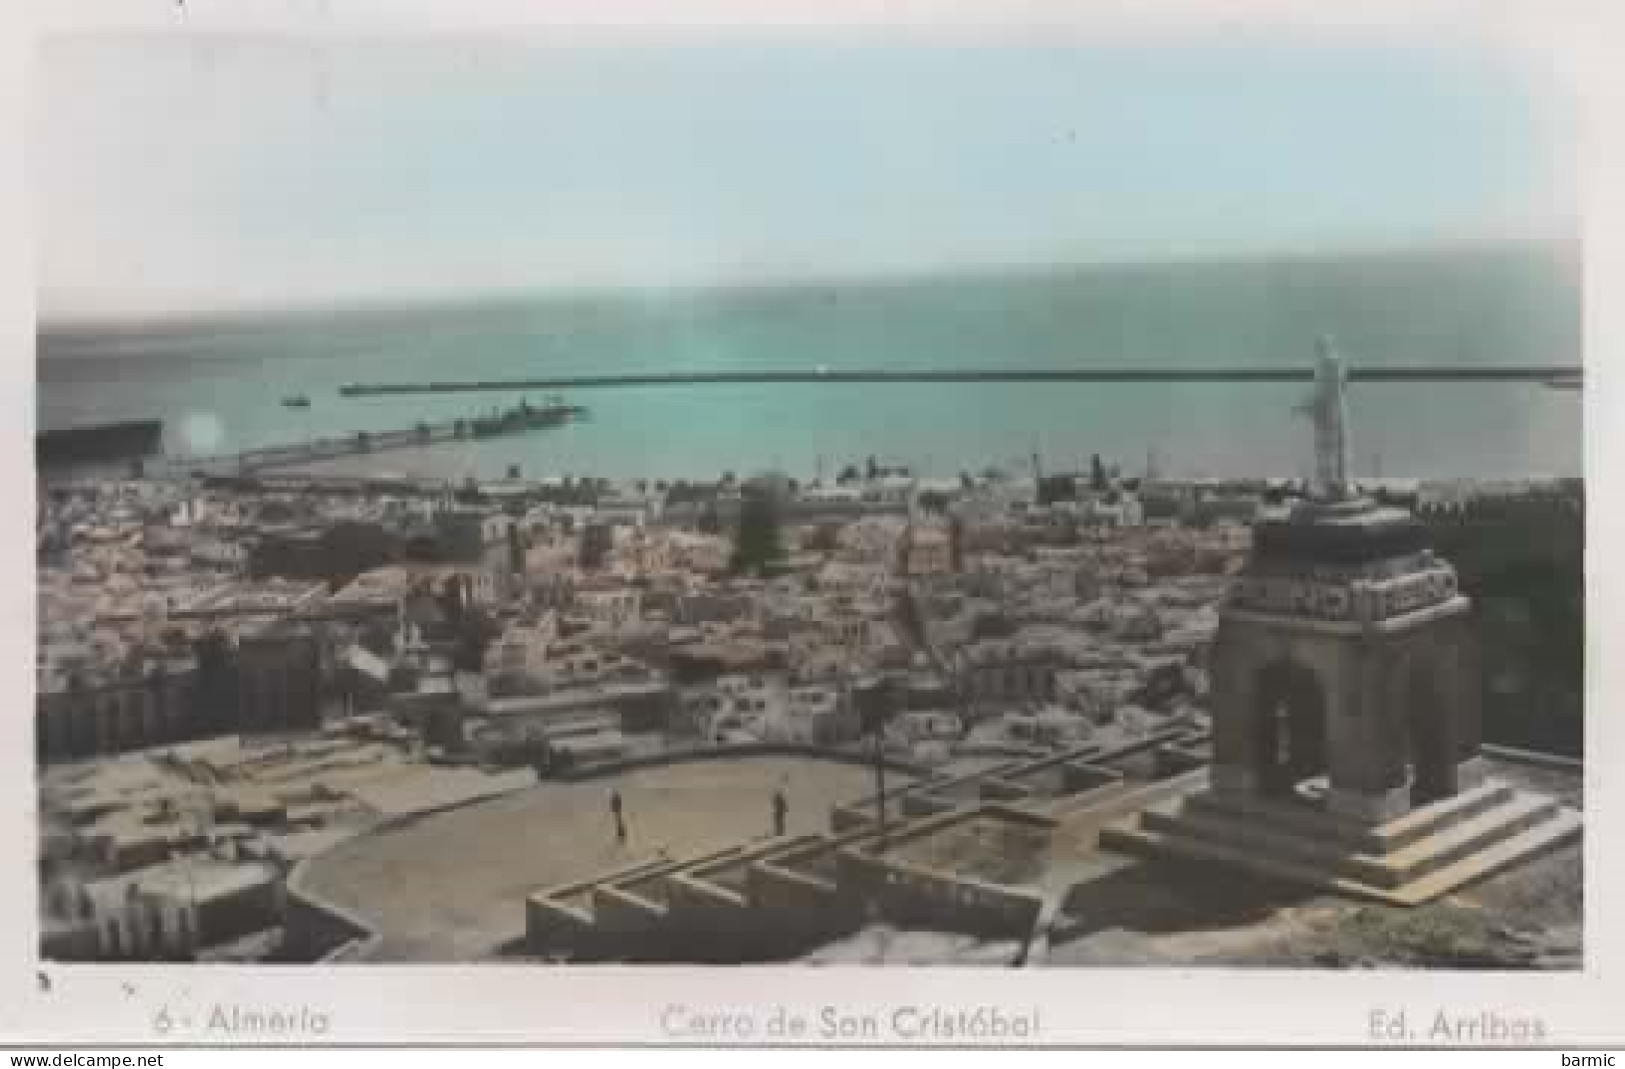 ALMERIA, CERRO DE SAN CRISTOBAL COULEUR REF 15903 - Almería